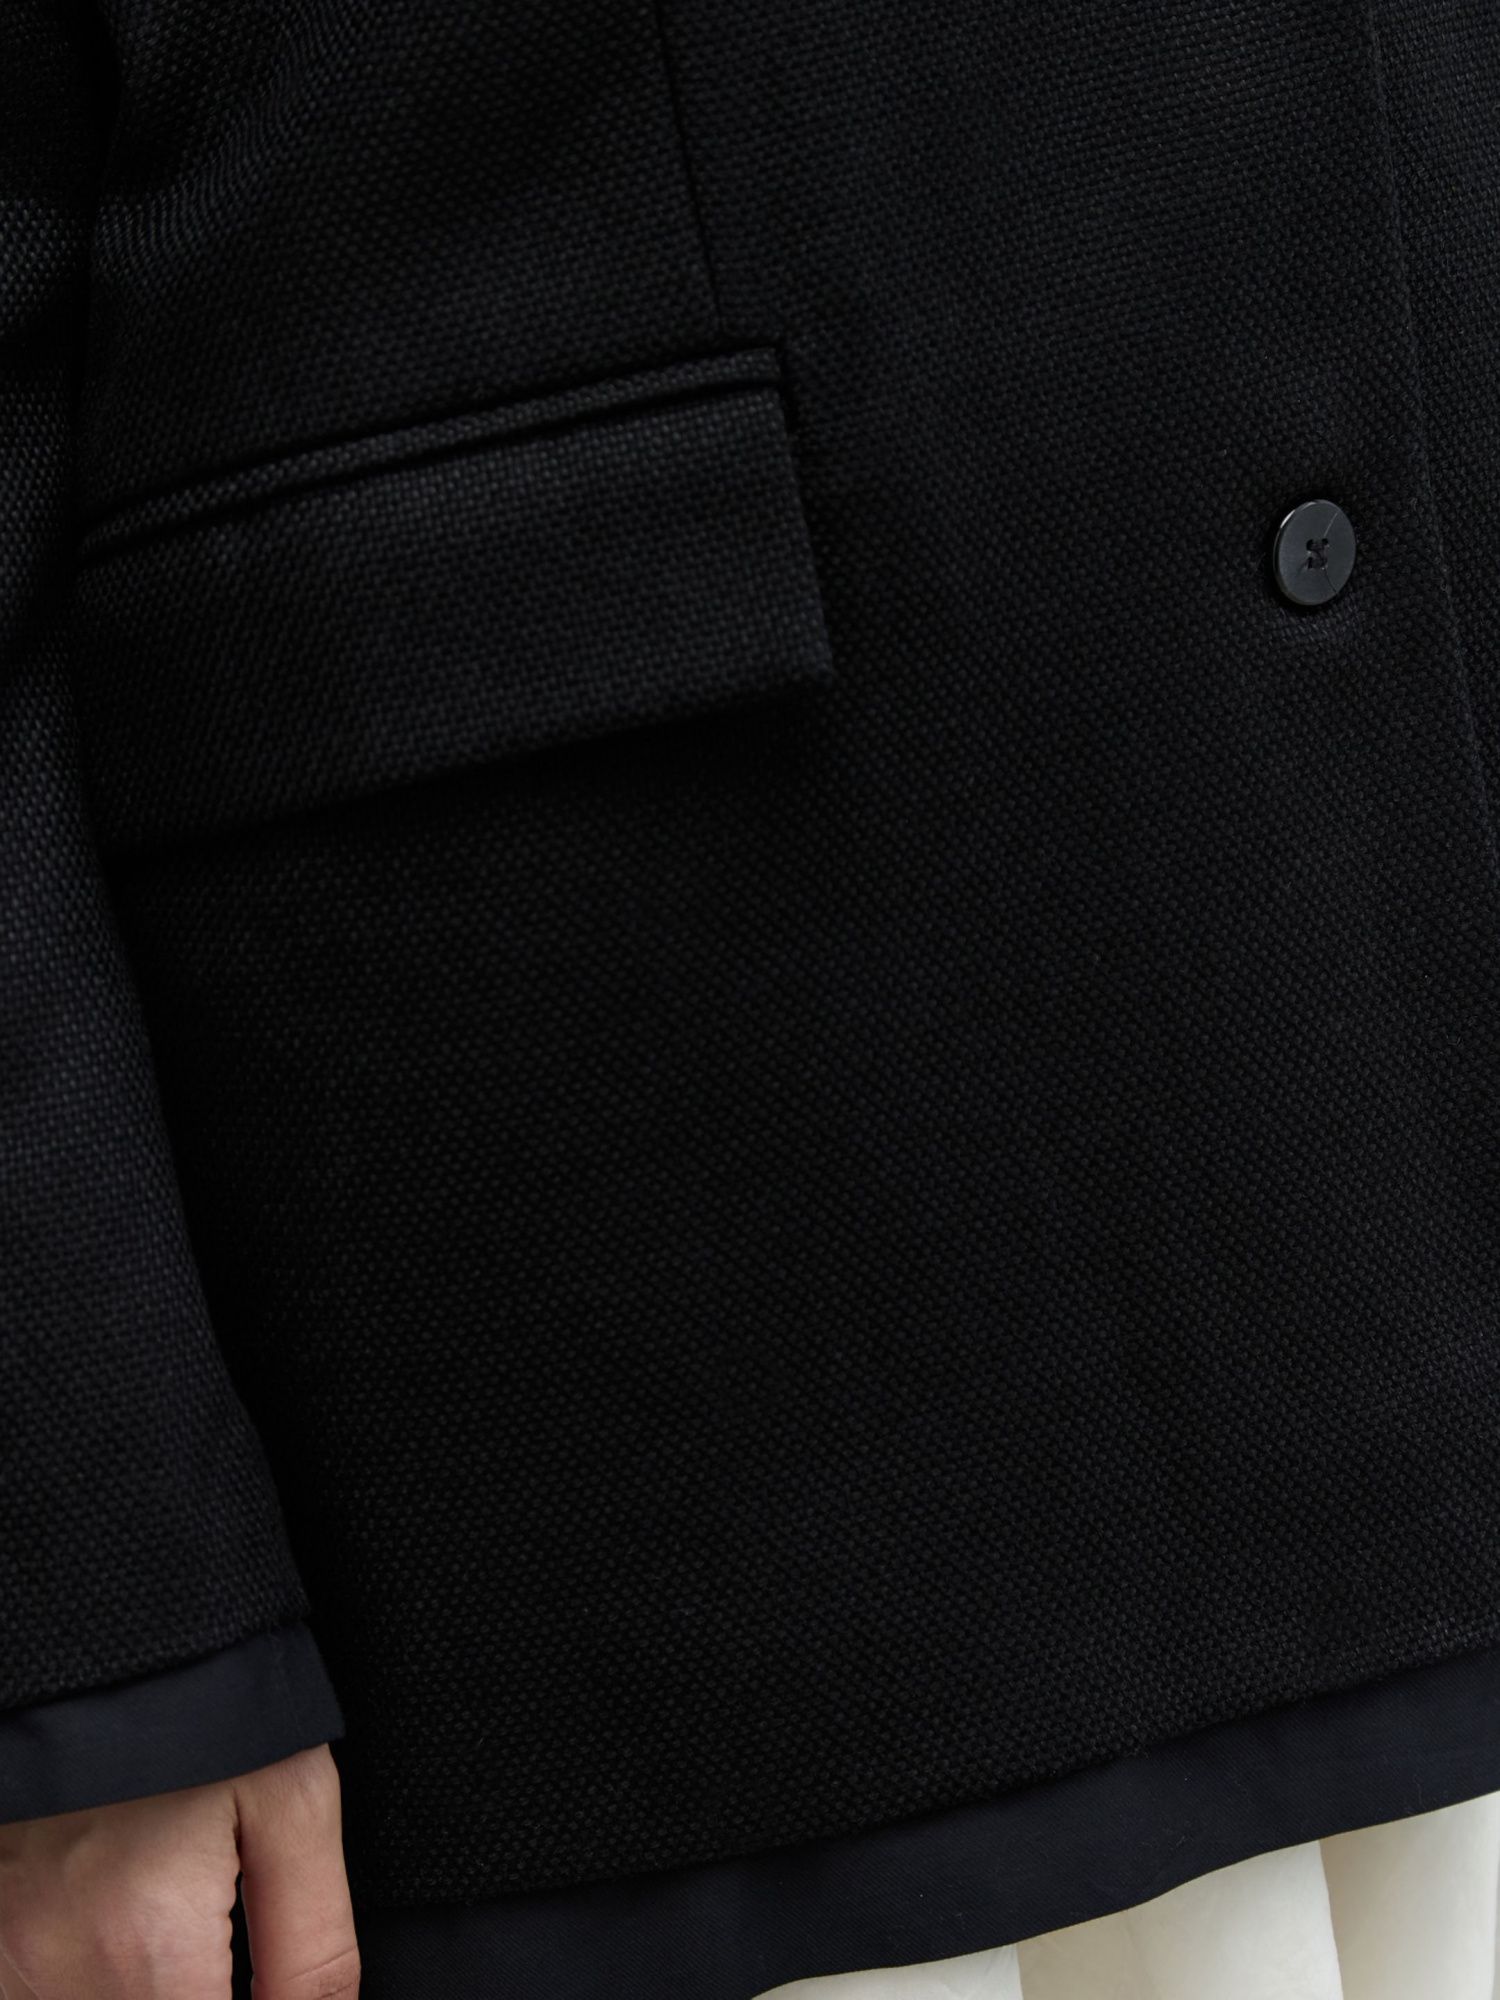 Жакет изо льна с имитацией рубашки черный - фото 5. Around